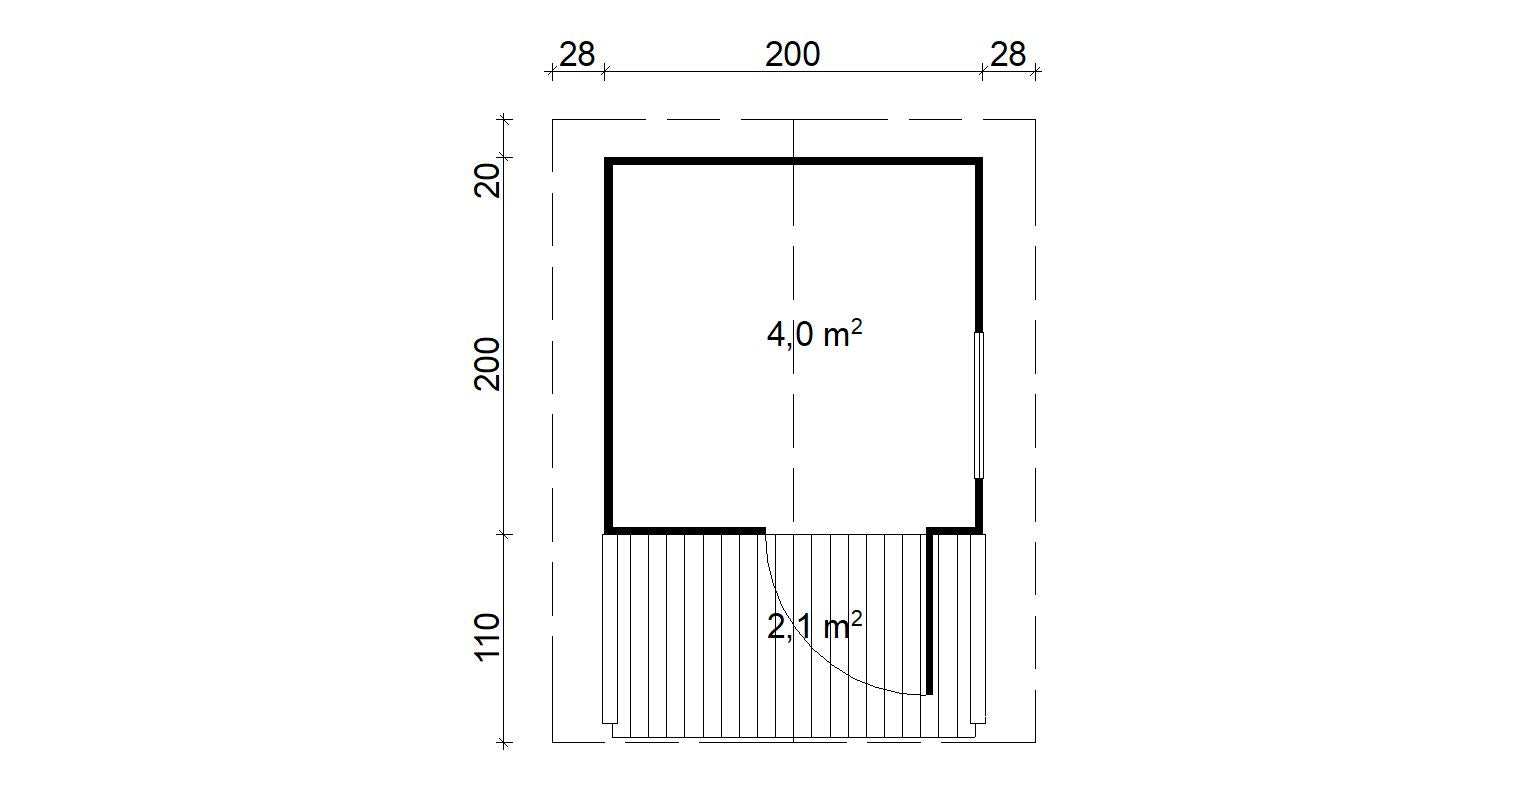 NIKLAS 2.2x2.2m Sauna Log Cabin Plan